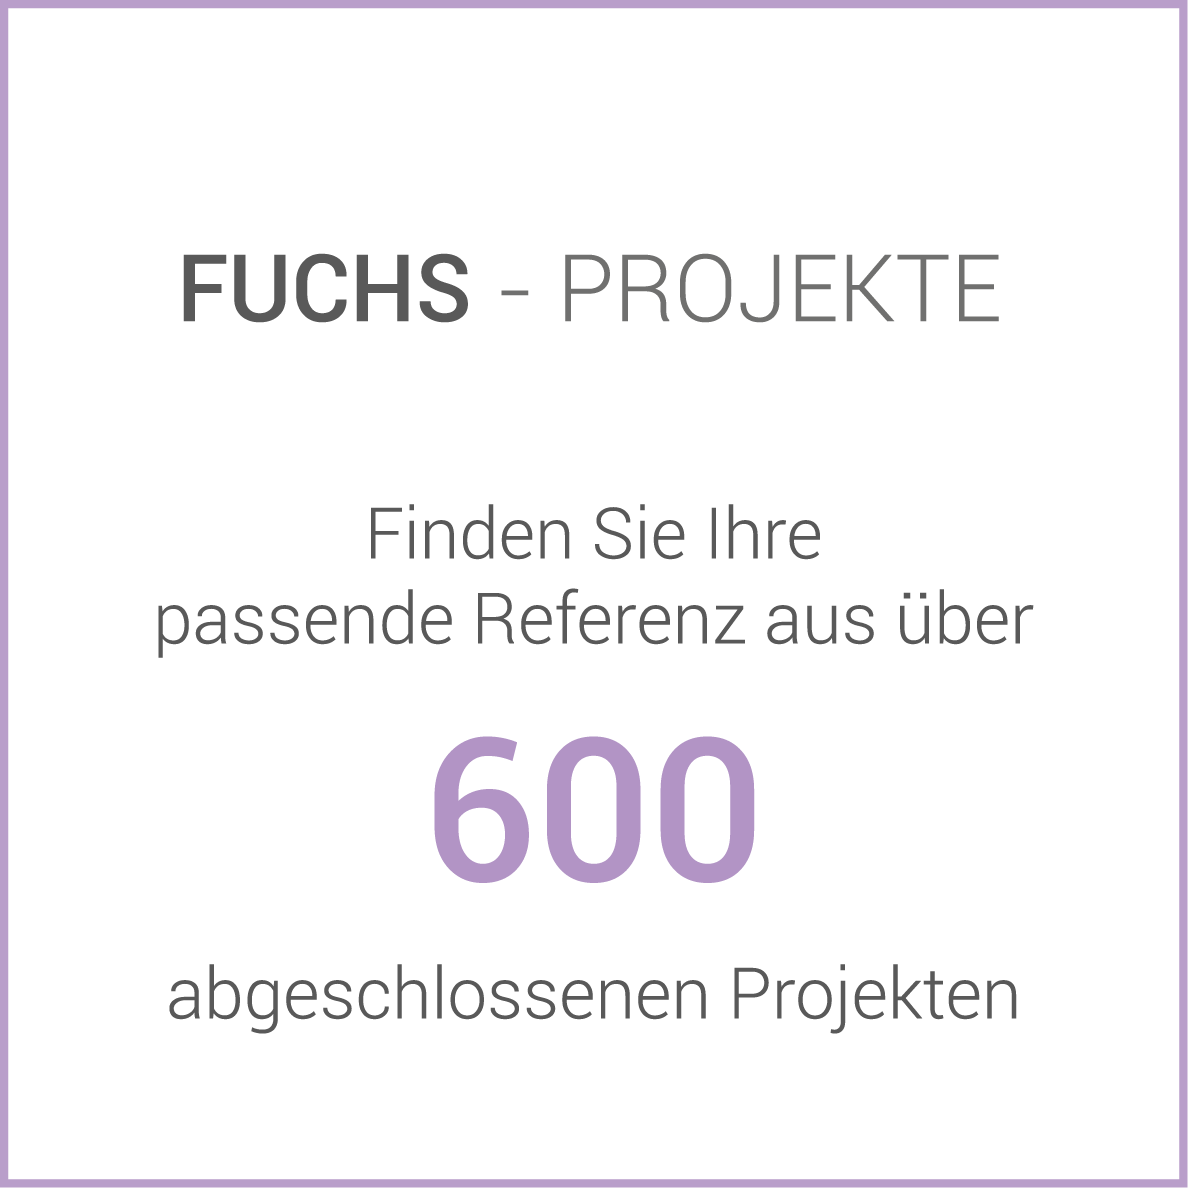 Fuchs - Projekte. Finden Sie Ihre passende Referenz aus über 600 abgeschlossenen Projekten